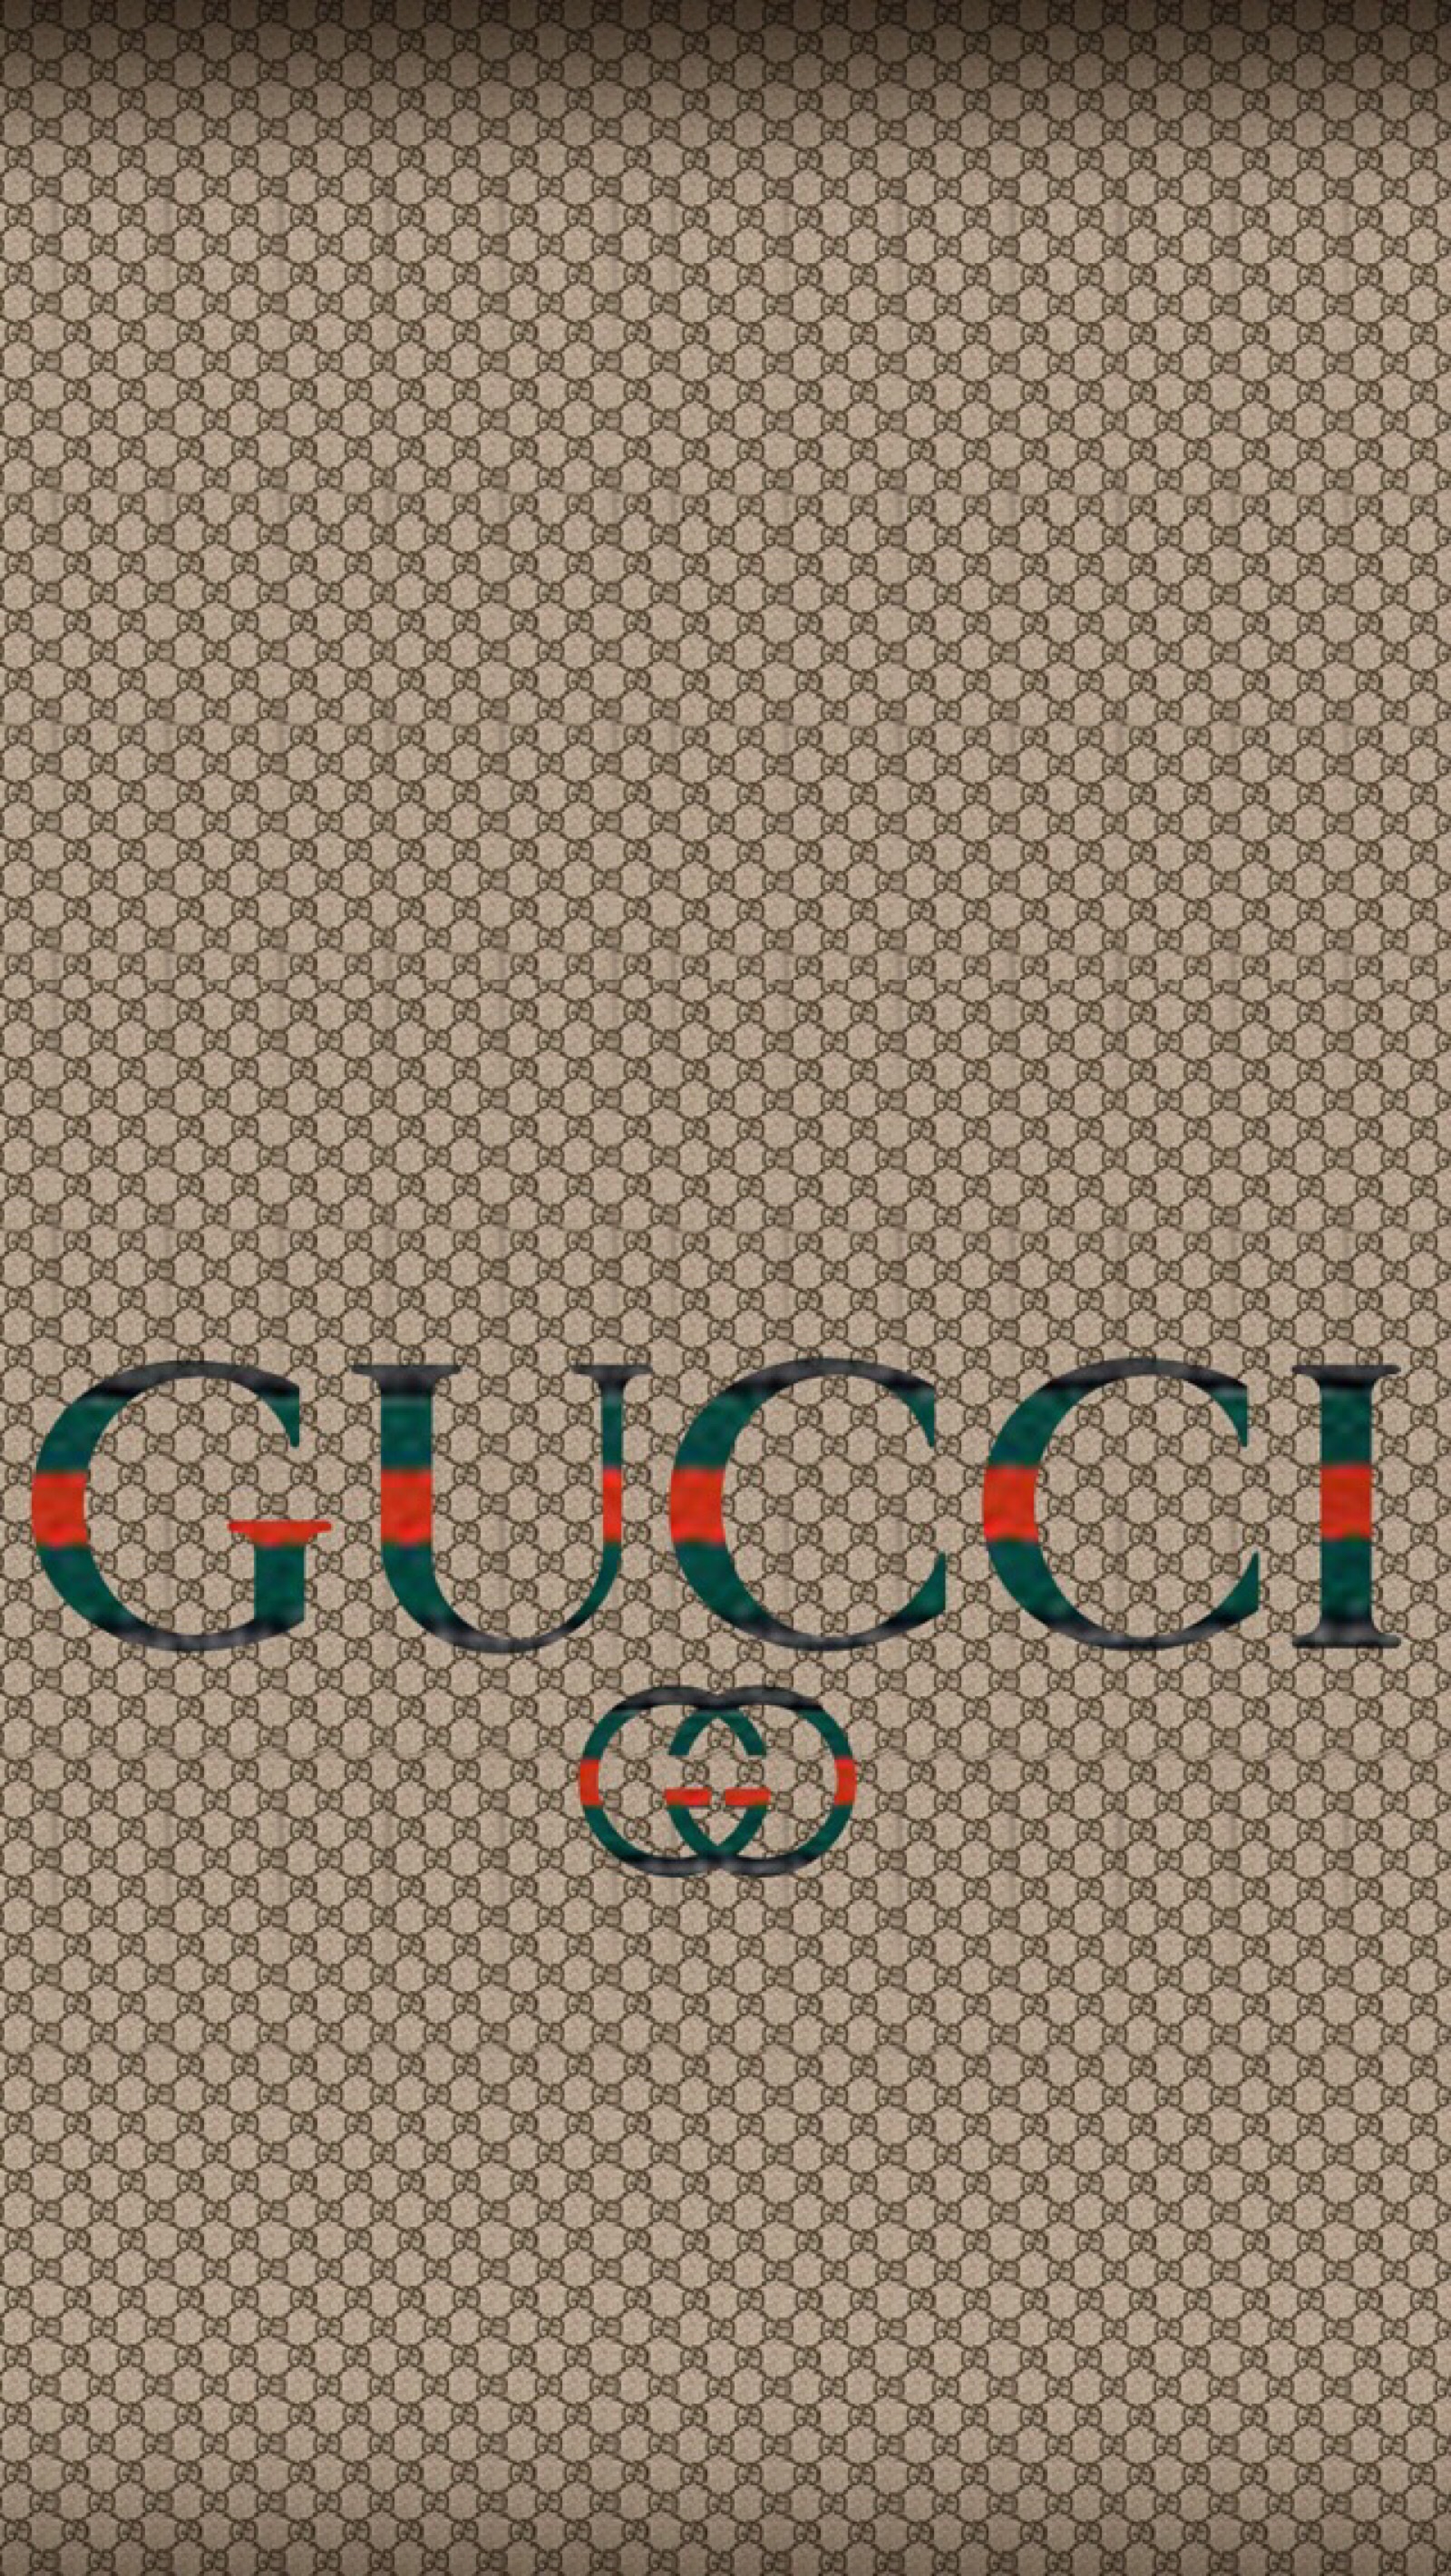 Gucci古奇dressage GG图案帆布女性购物袋素材-欧莱凯设计网